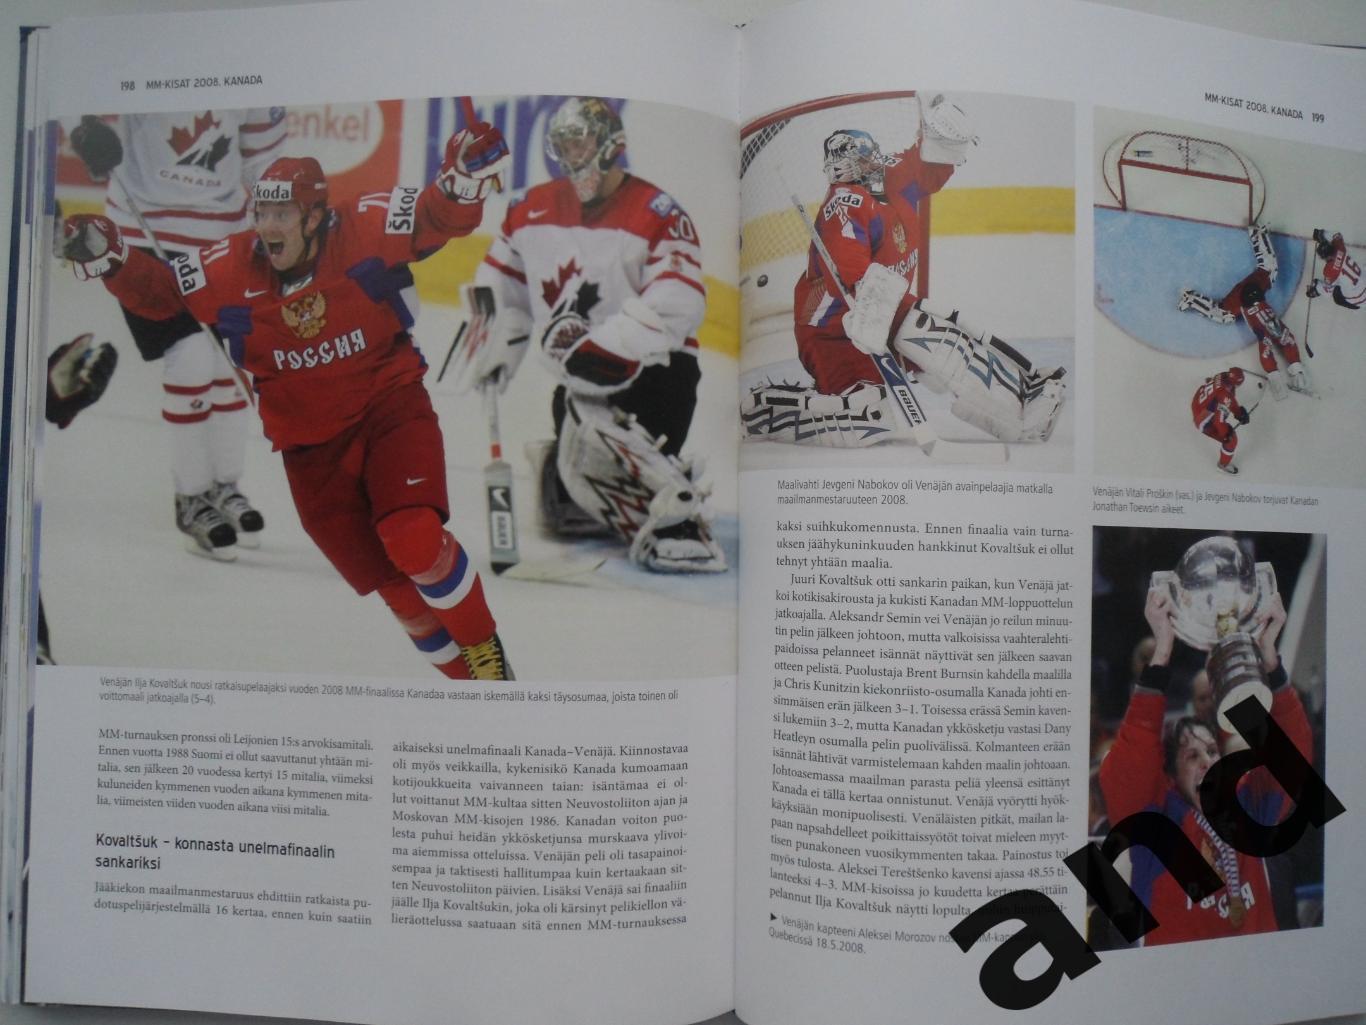 фотоальбом Чемпионаты мира по хоккею 2004-2008 + Олимпиада 2006 3